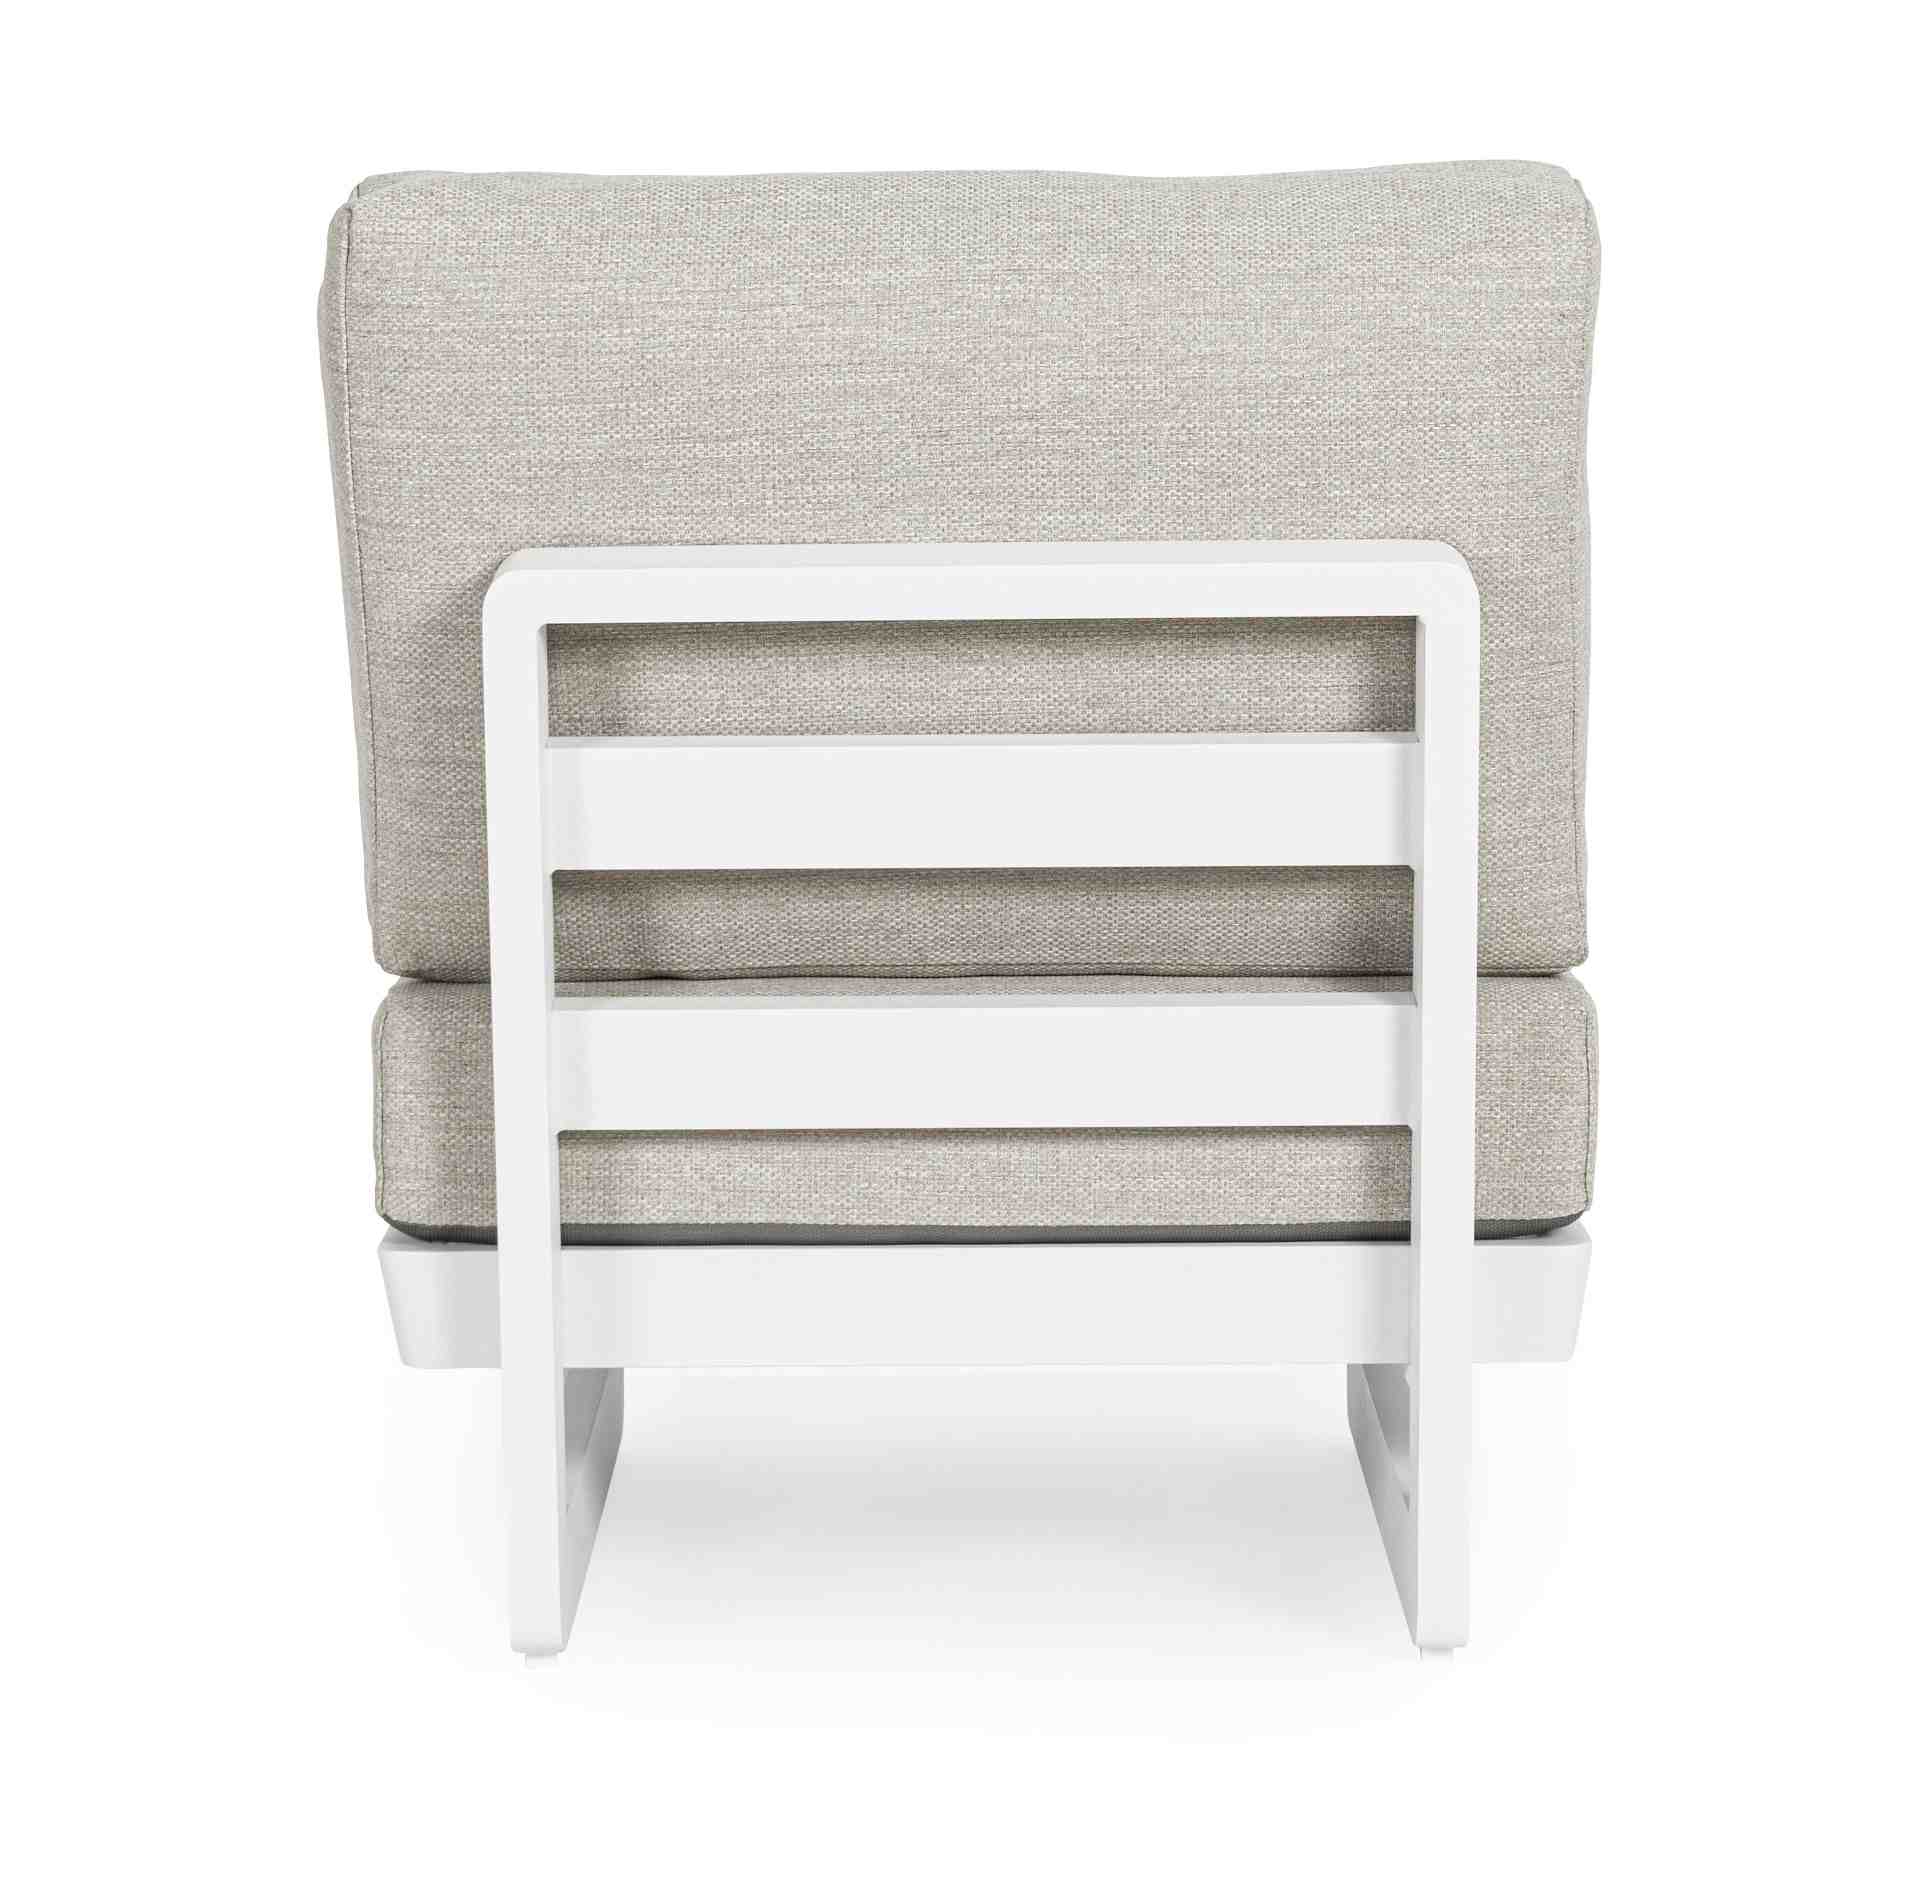 Der Gartensessel Infinity überzeugt mit seinem modernen Design. Gefertigt wurde es aus Olefin-Stoff, welcher einen grauen Farbton besitzt. Das Gestell ist aus Aluminium und hat eine weiße Farbe. Der Sessel verfügt über eine Sitzhöhe von 38 cm und ist für 